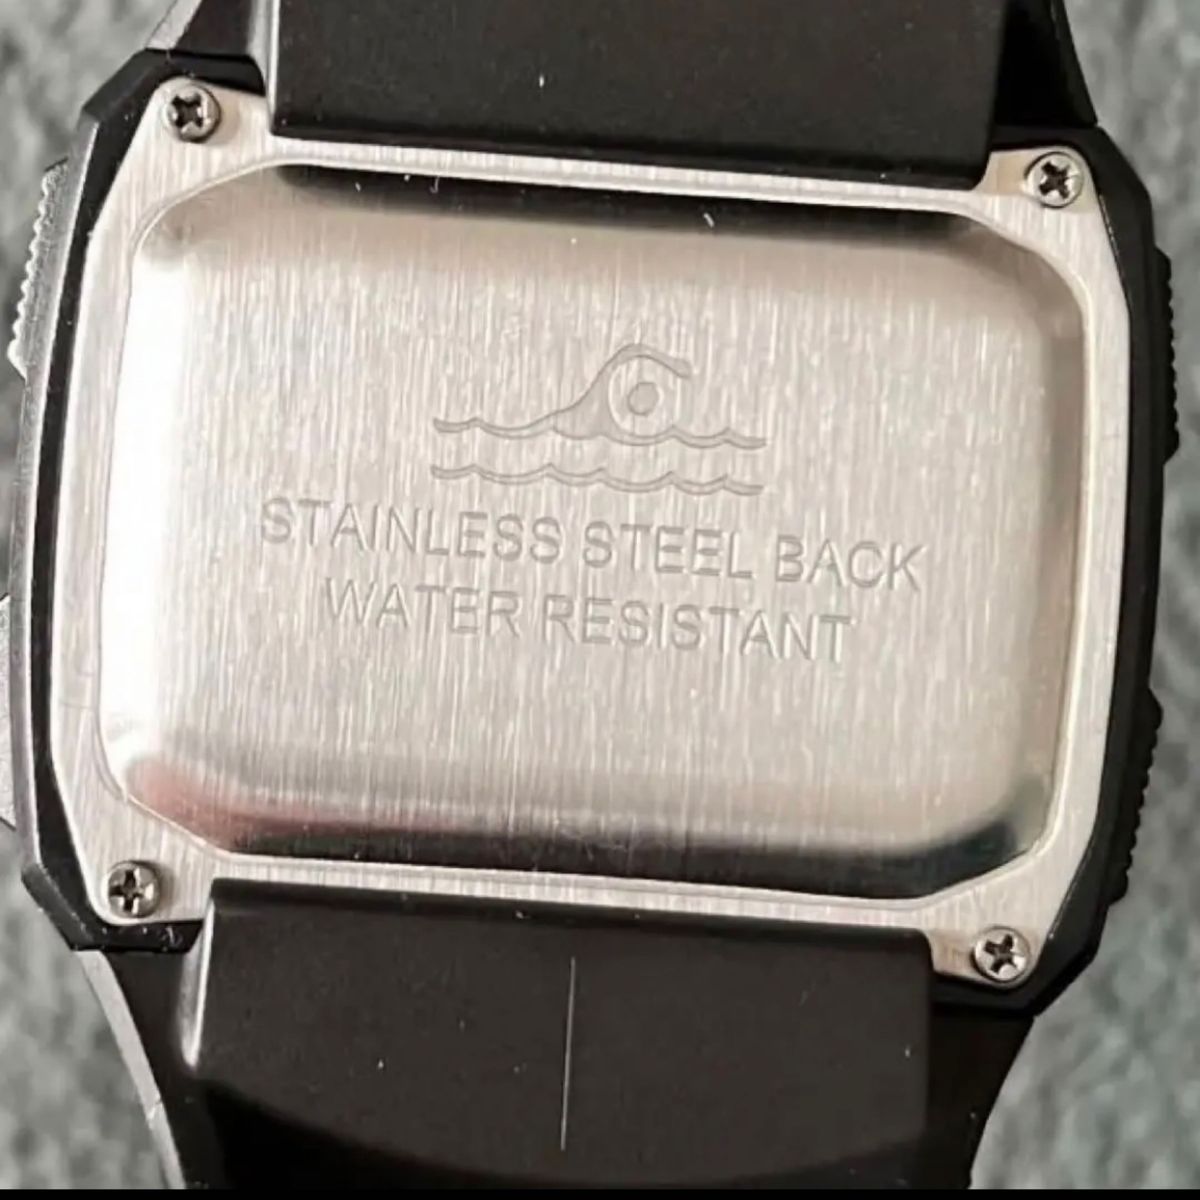 新品 SYNOKE ビッグフェイスデジタル 防水 デジタルストップウォッチ メンズ腕時計 スクエア ゴールド